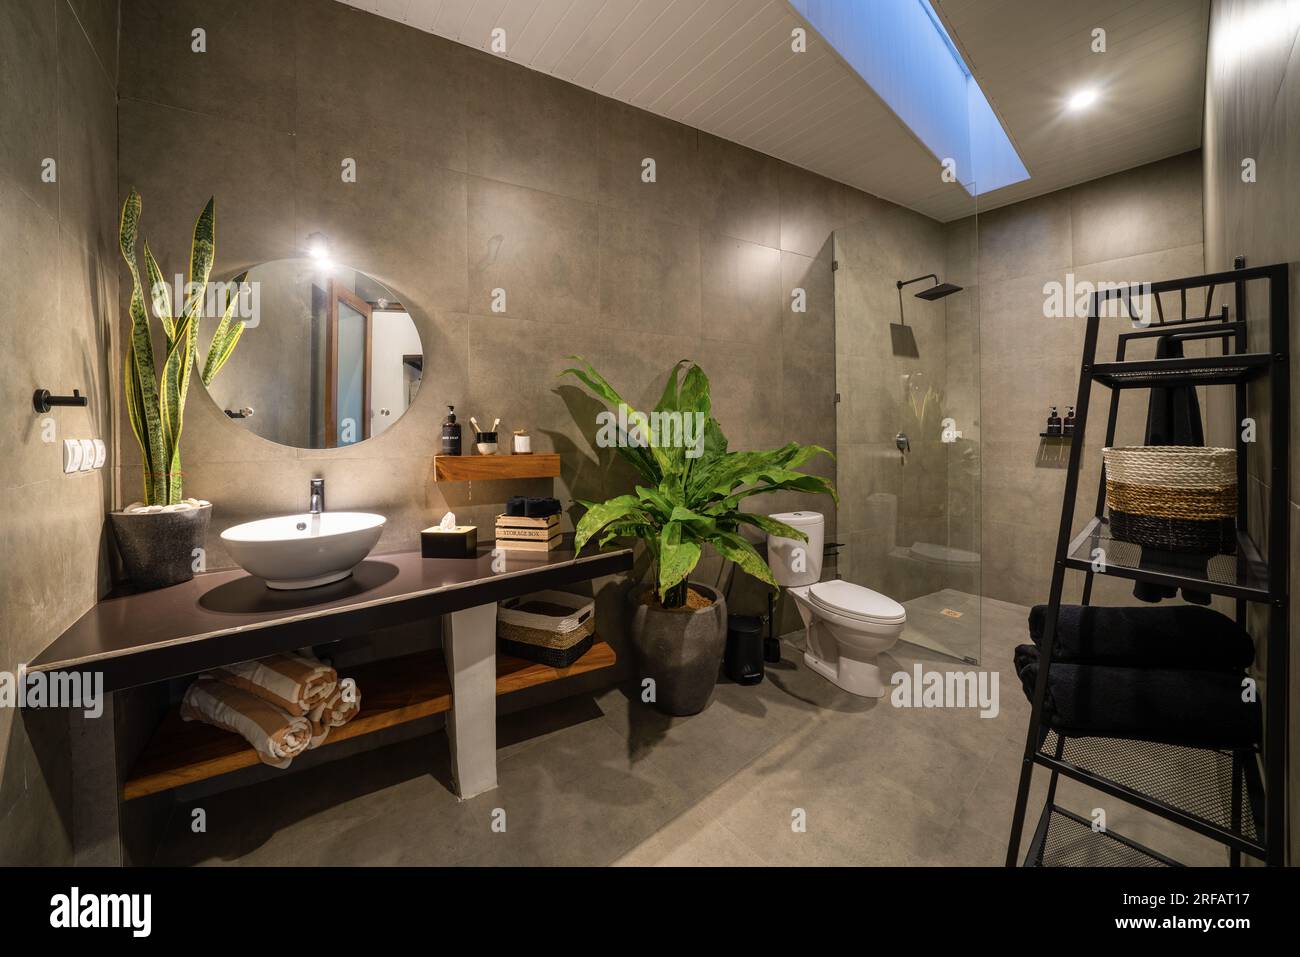 Salle de bain luxueuse avec béton poli sur les murs et PVC sur le sol. Salle de bains moderne avec murs cirés. Banque D'Images